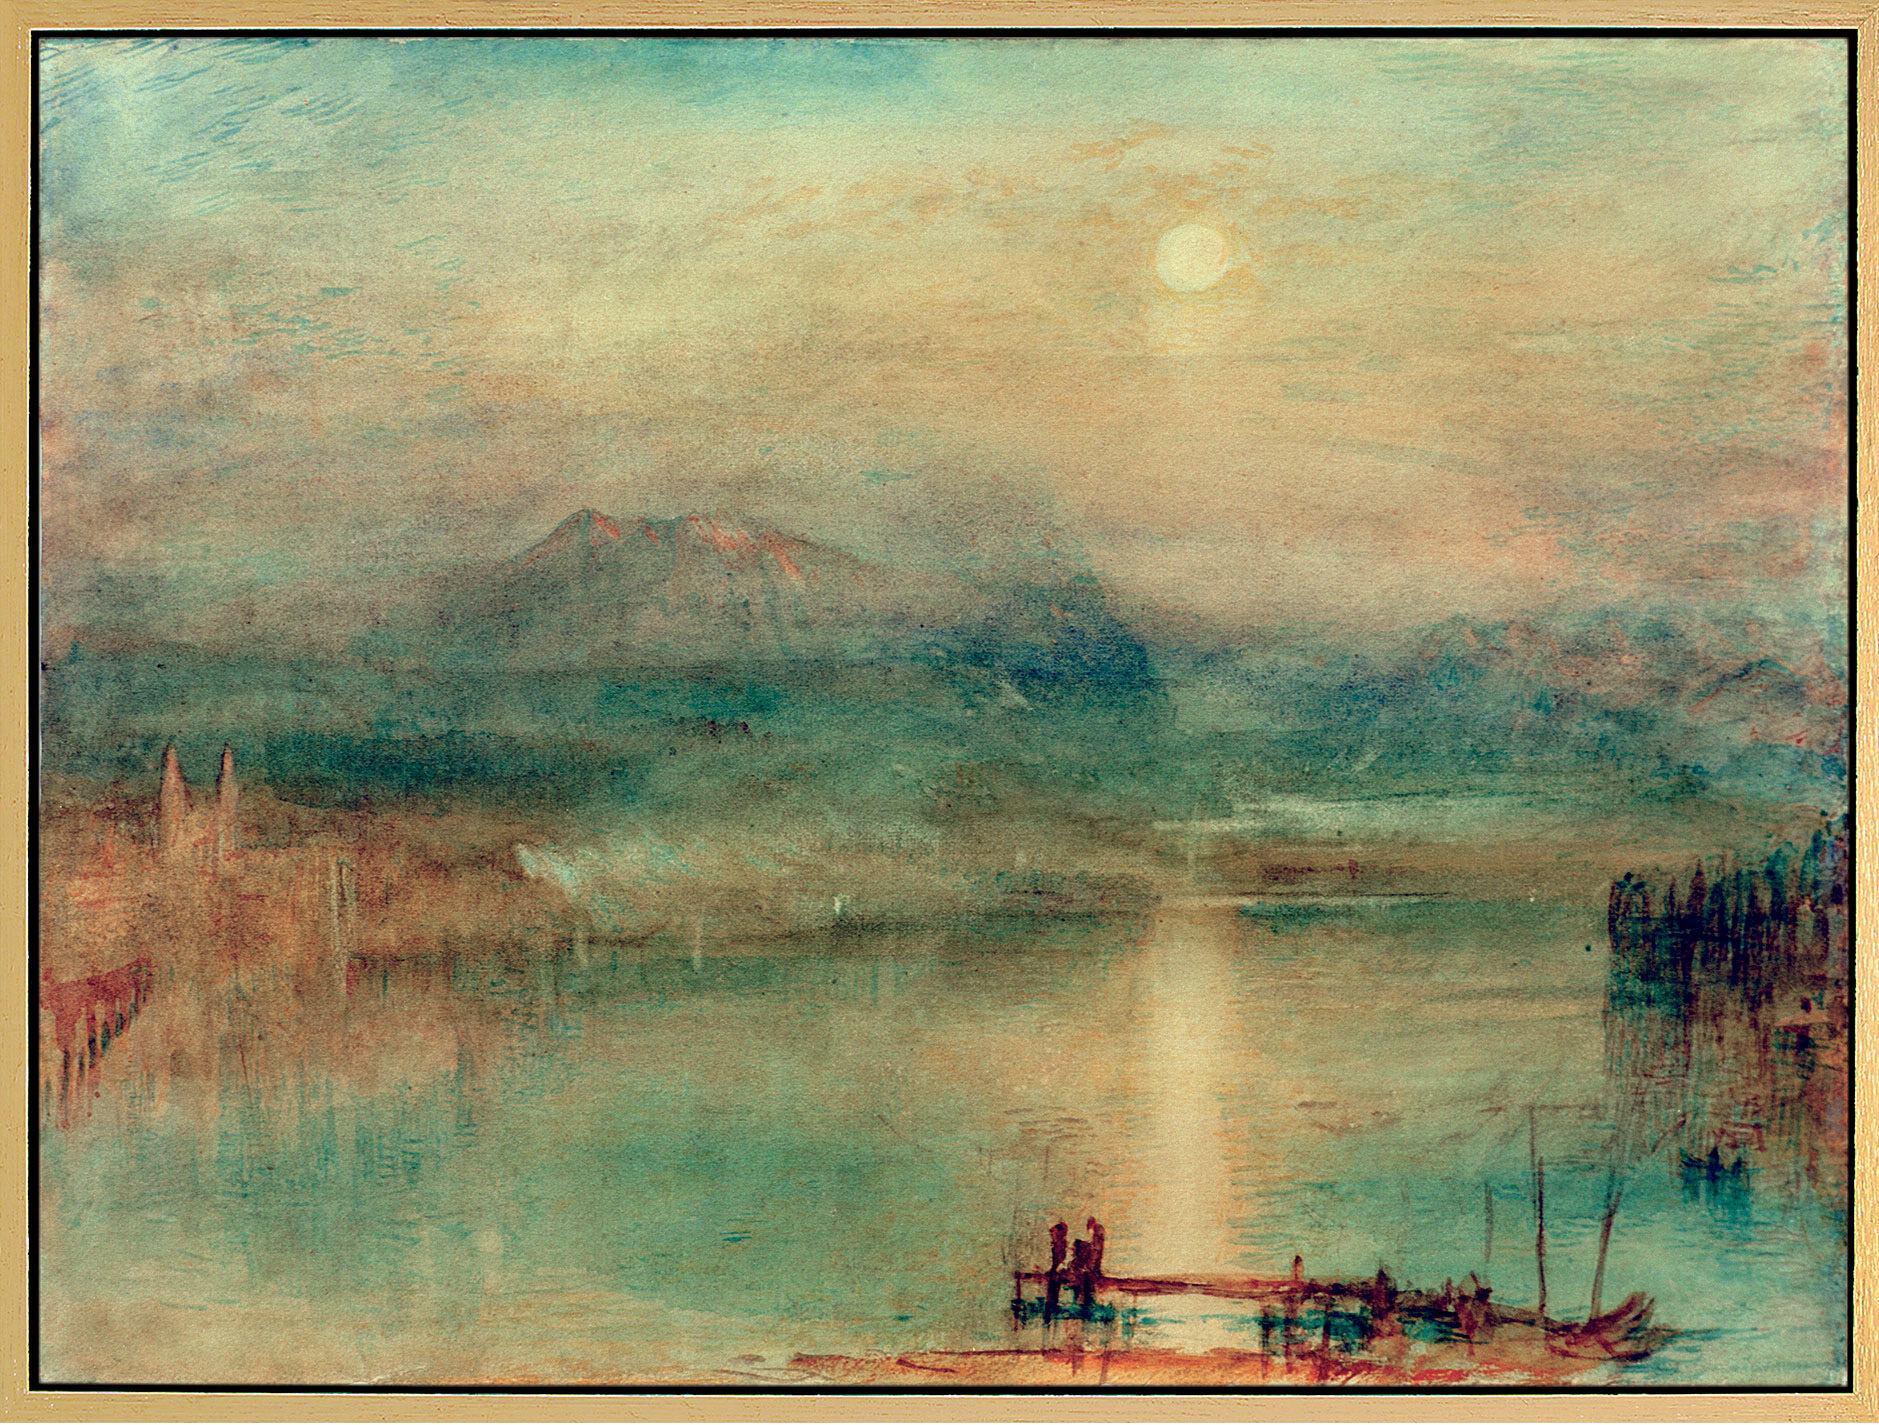 Bild "Månsken över Luzernsjön" (ca 1841-44), inramad von William Turner